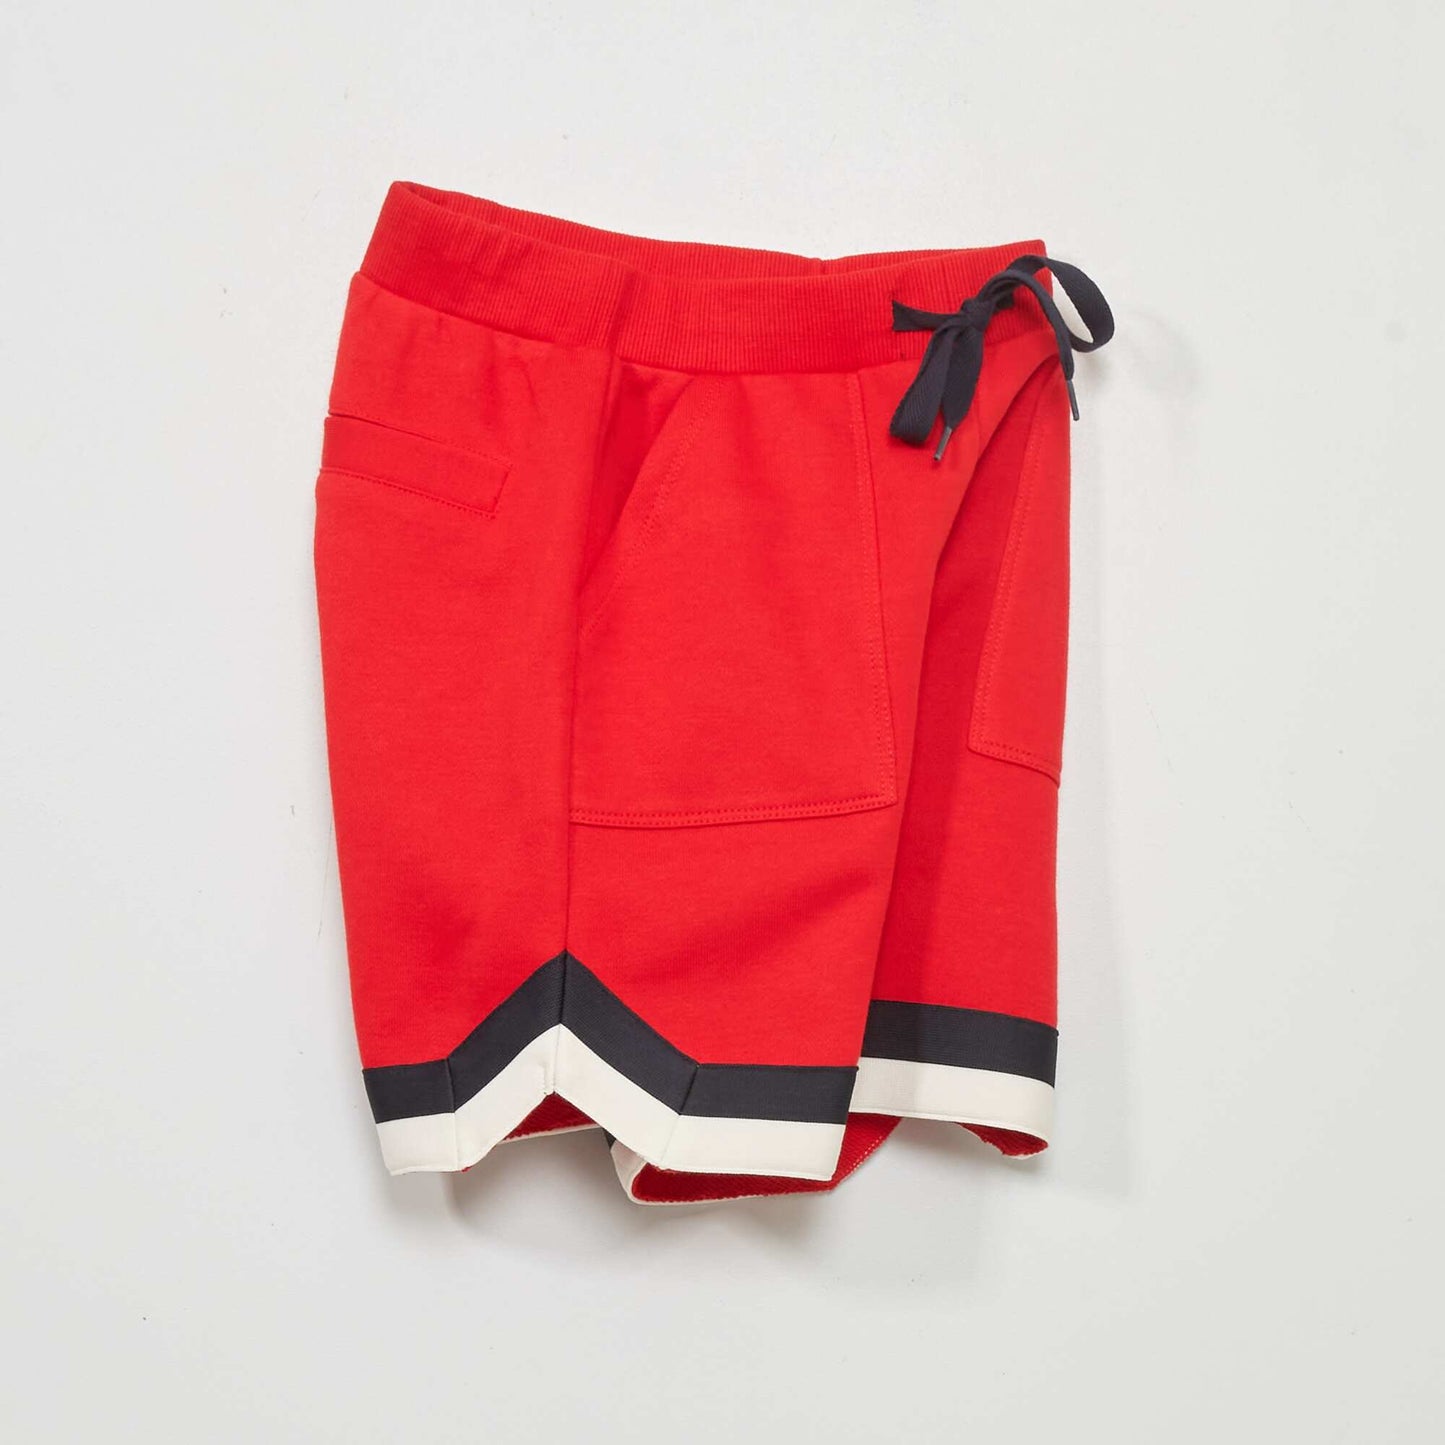 Sweatshirt fabric Bermuda shorts RED